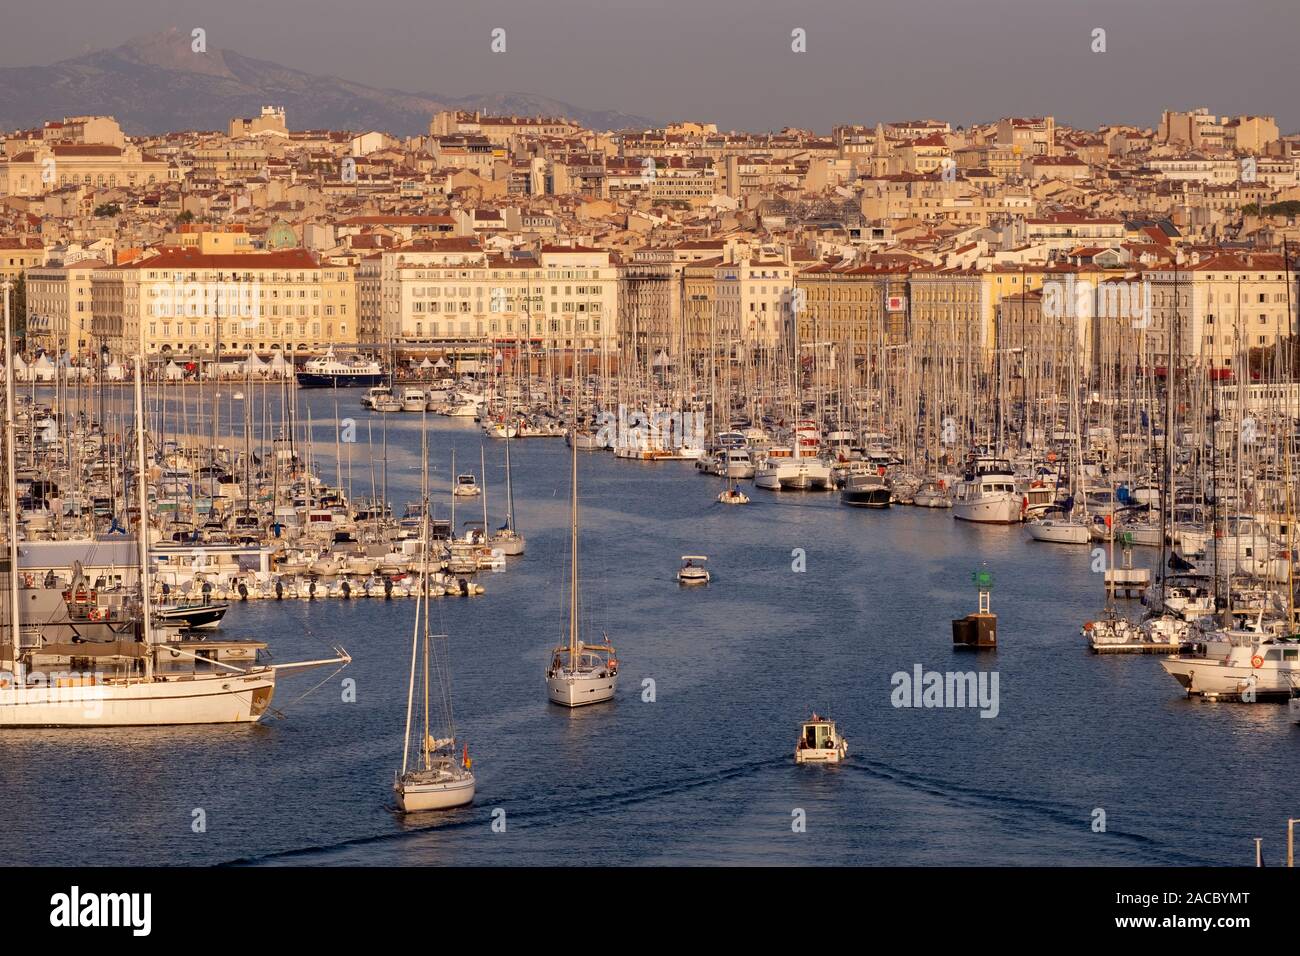 Le Vieux Port de Marseille / Vieux-Port de Marseille, Provence, France, Europe Banque D'Images